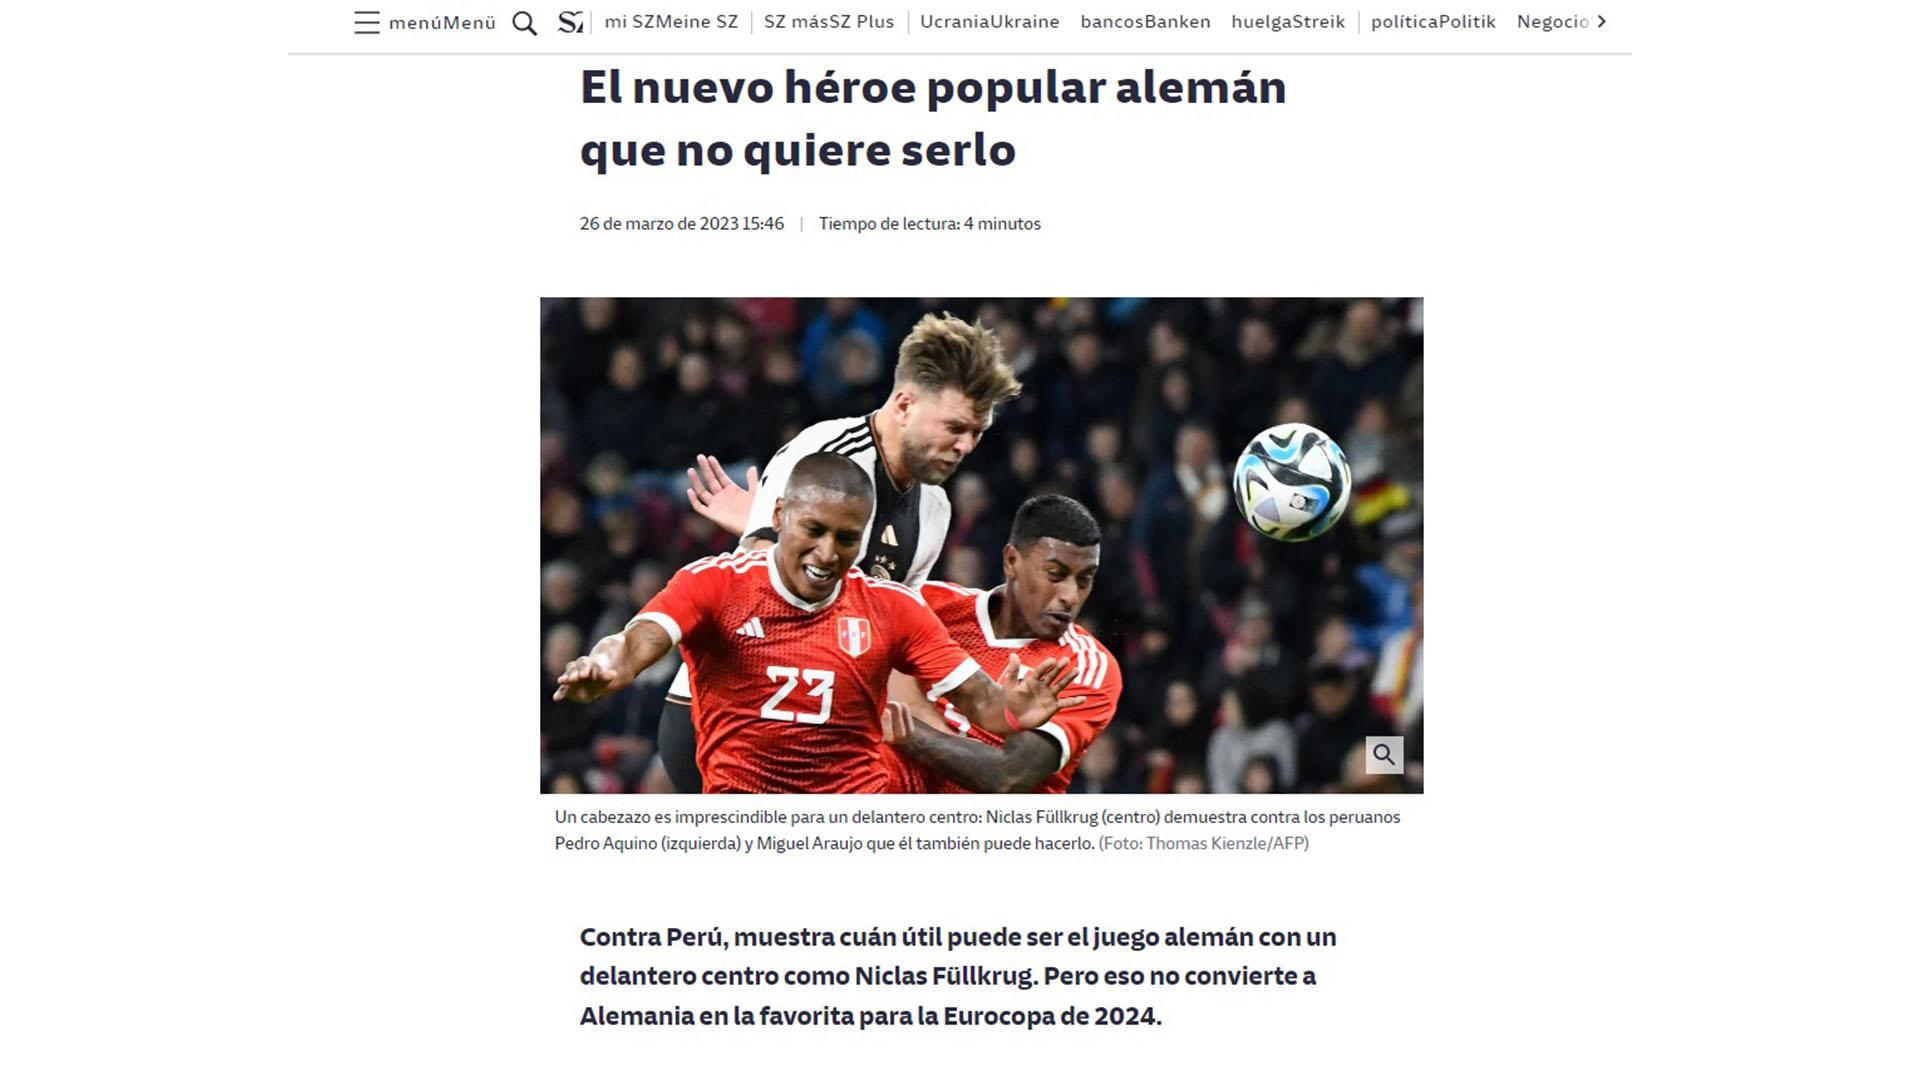 Suddeutsche Zeitung acerca de la victoria alemana contra Perú haciendo referencia a Niclas Fullkrug.